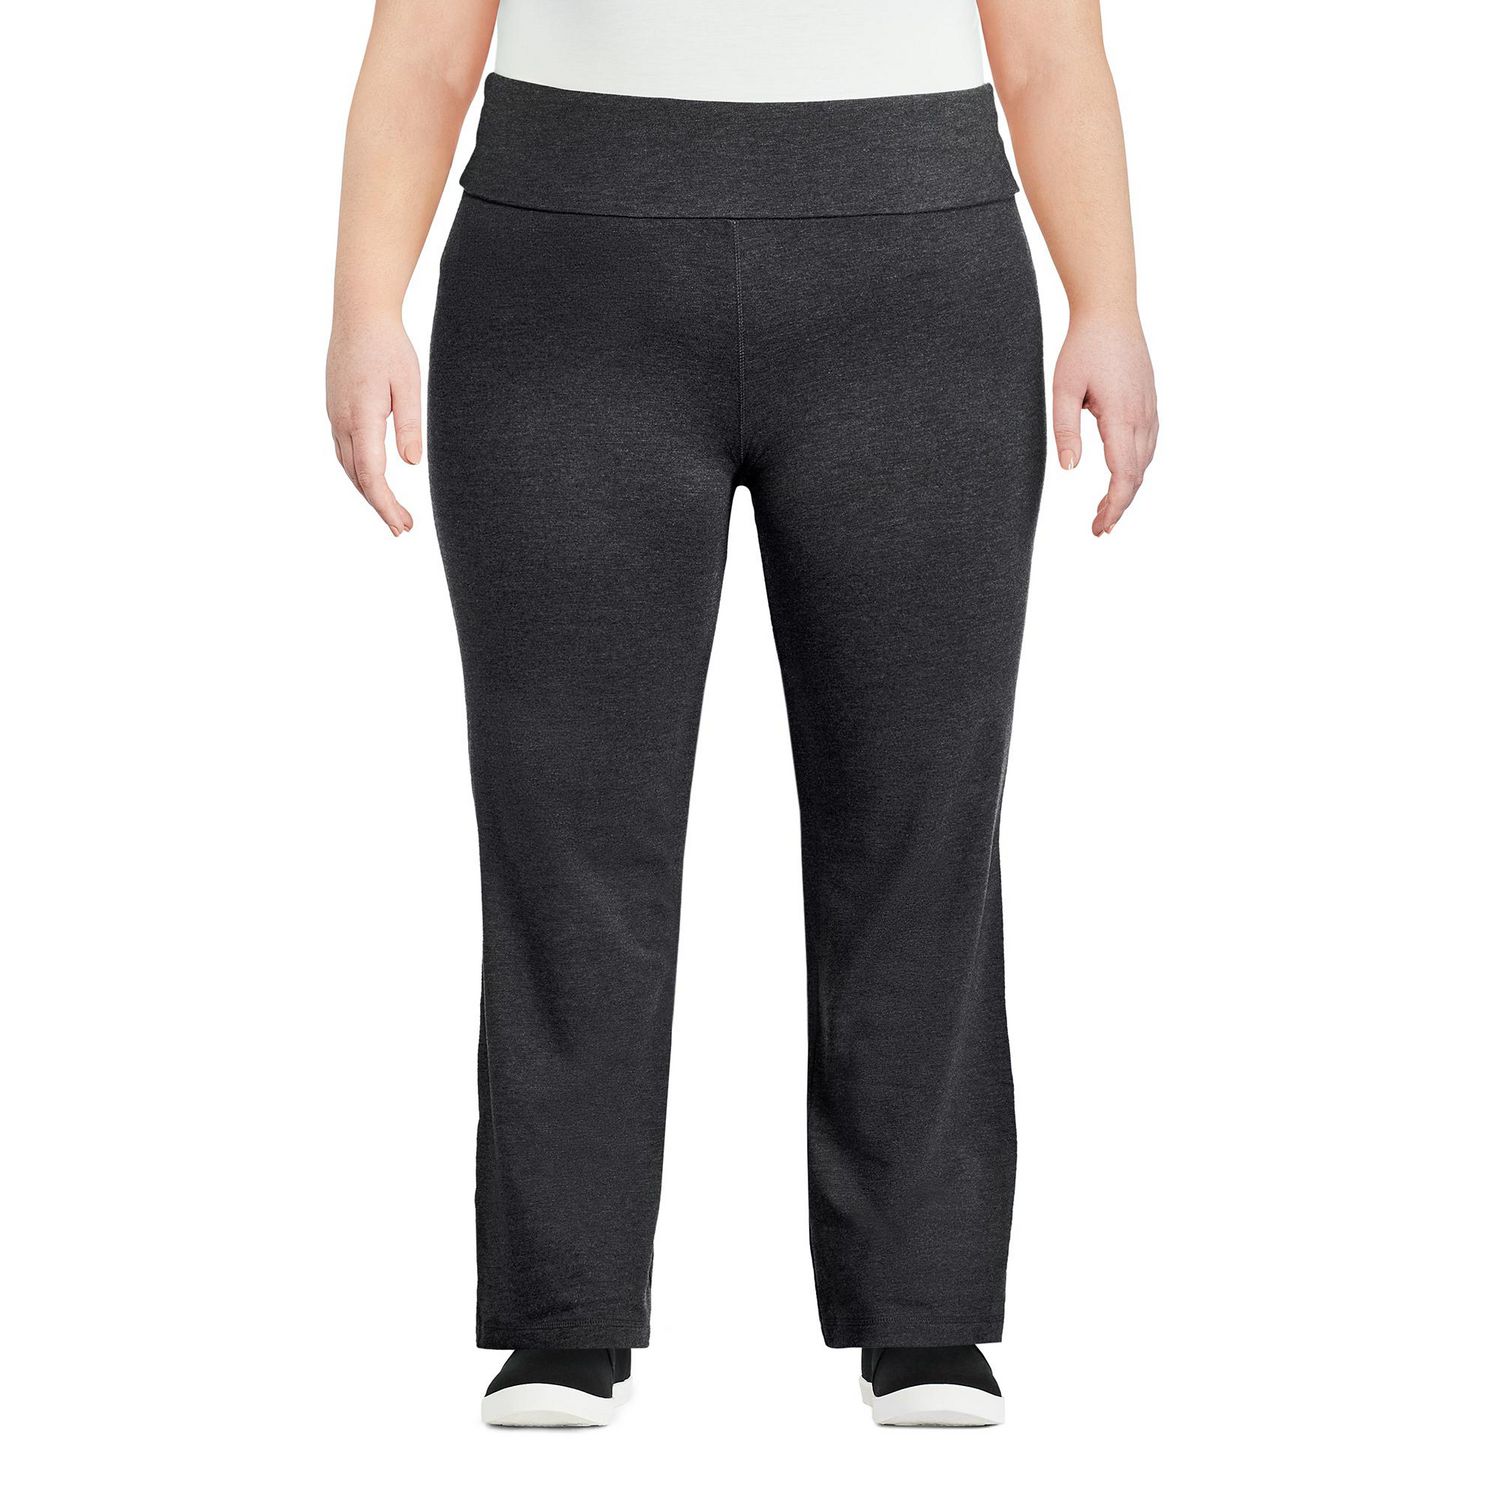 Shop Women's Pants online at Ackermans